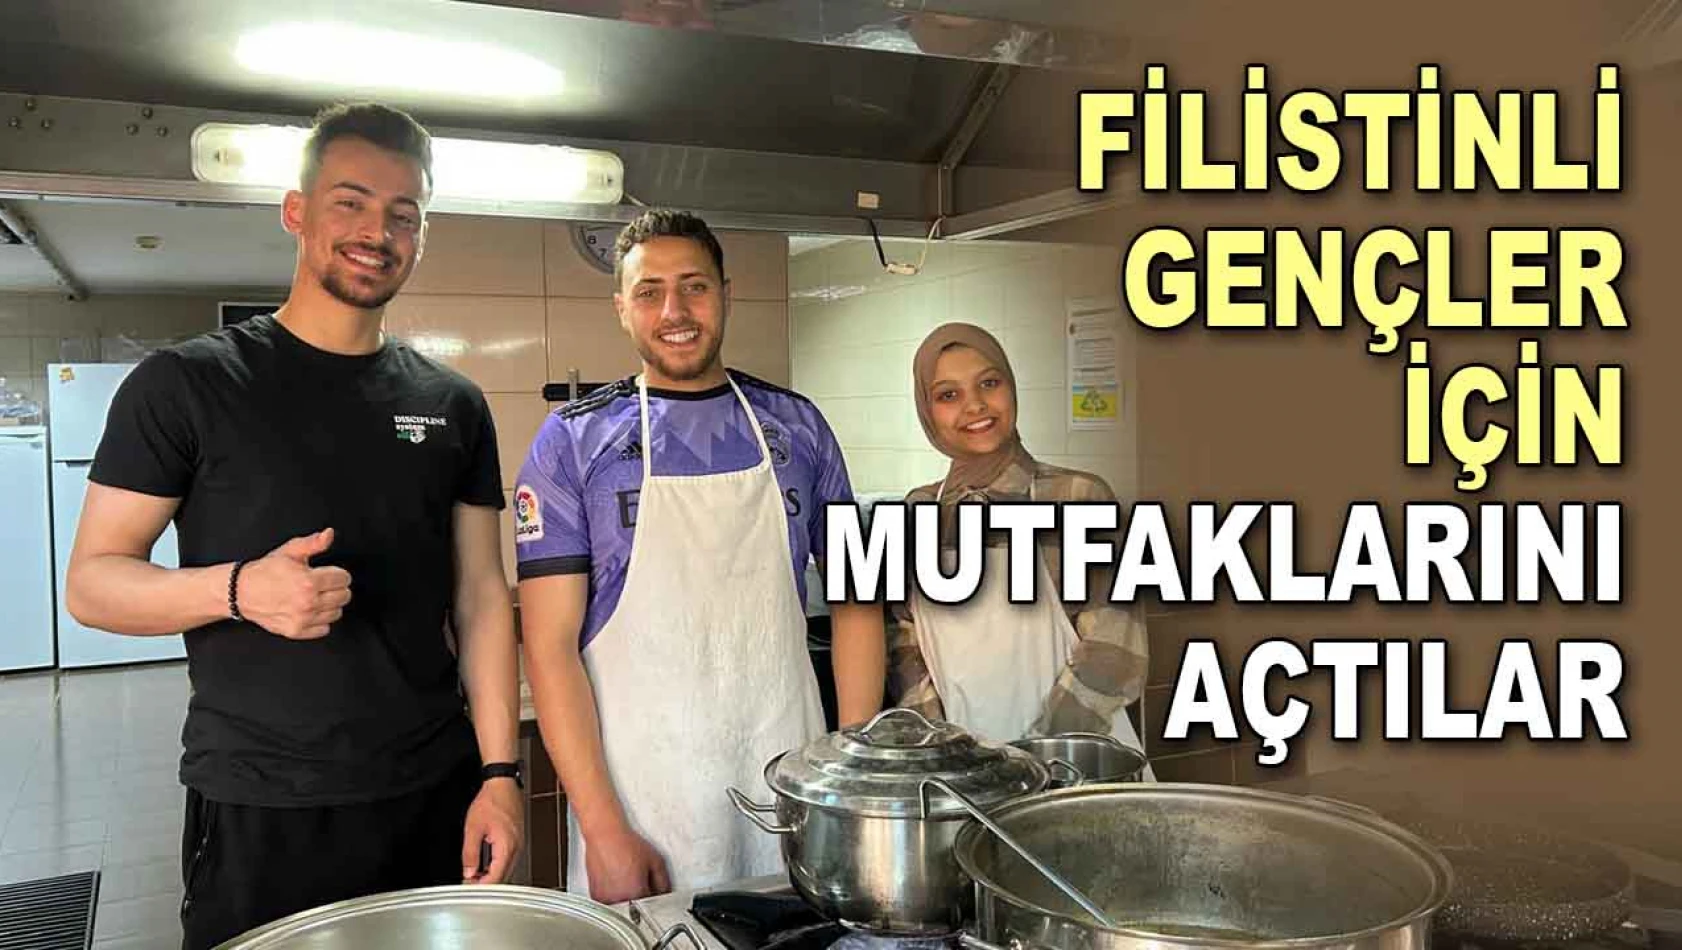 Filistinli Gençler için Mutfaklarını Açtılar